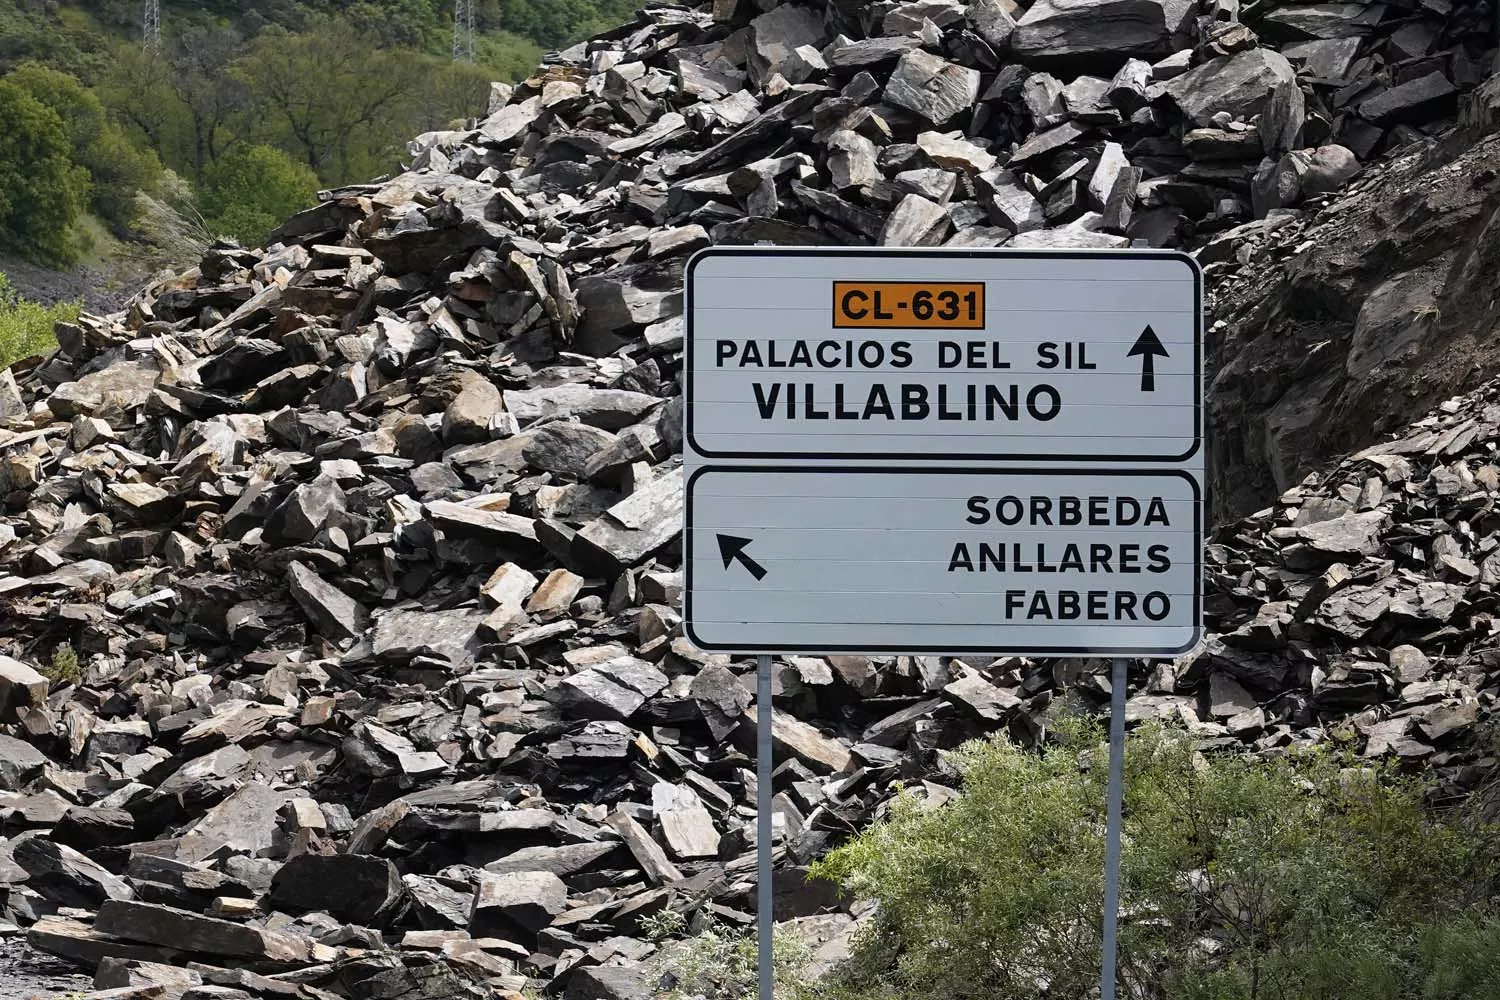 Desprendimiento de rocas y tierra en la carretera CL 631 en la localidad de Páramo del Sil (5)